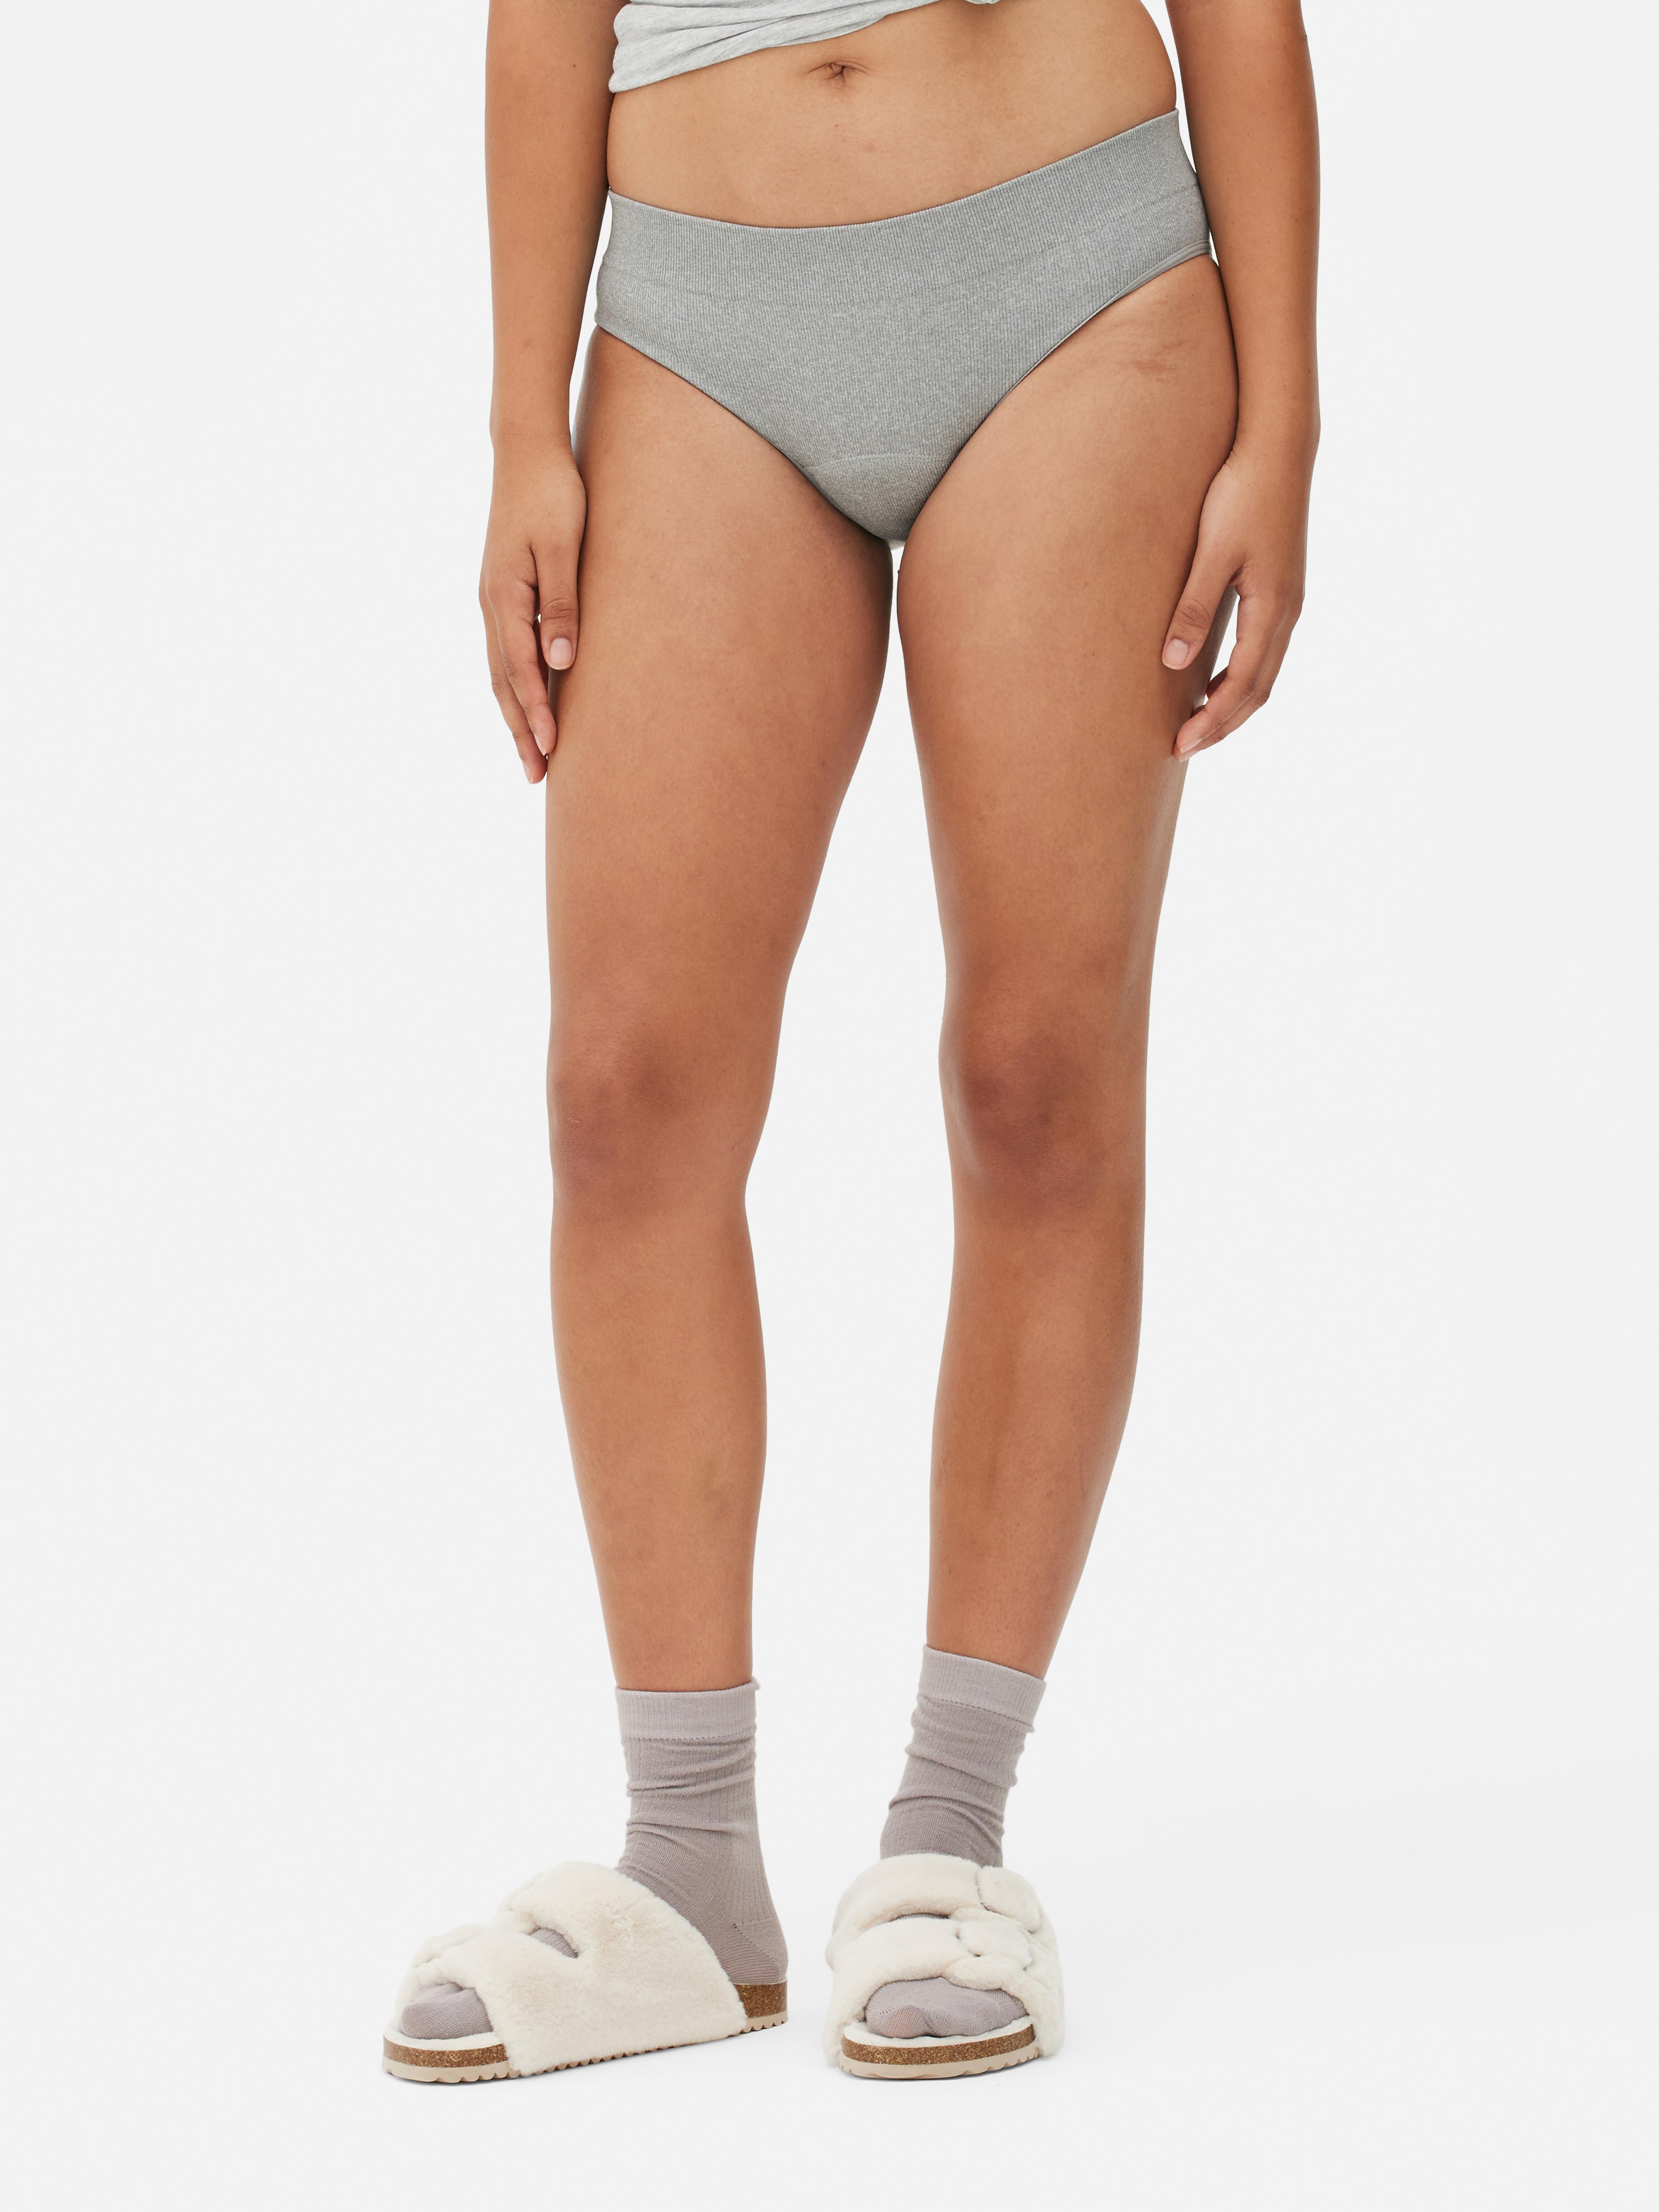 Primark launch new 'Period Underwear' on sale in stores now - U105